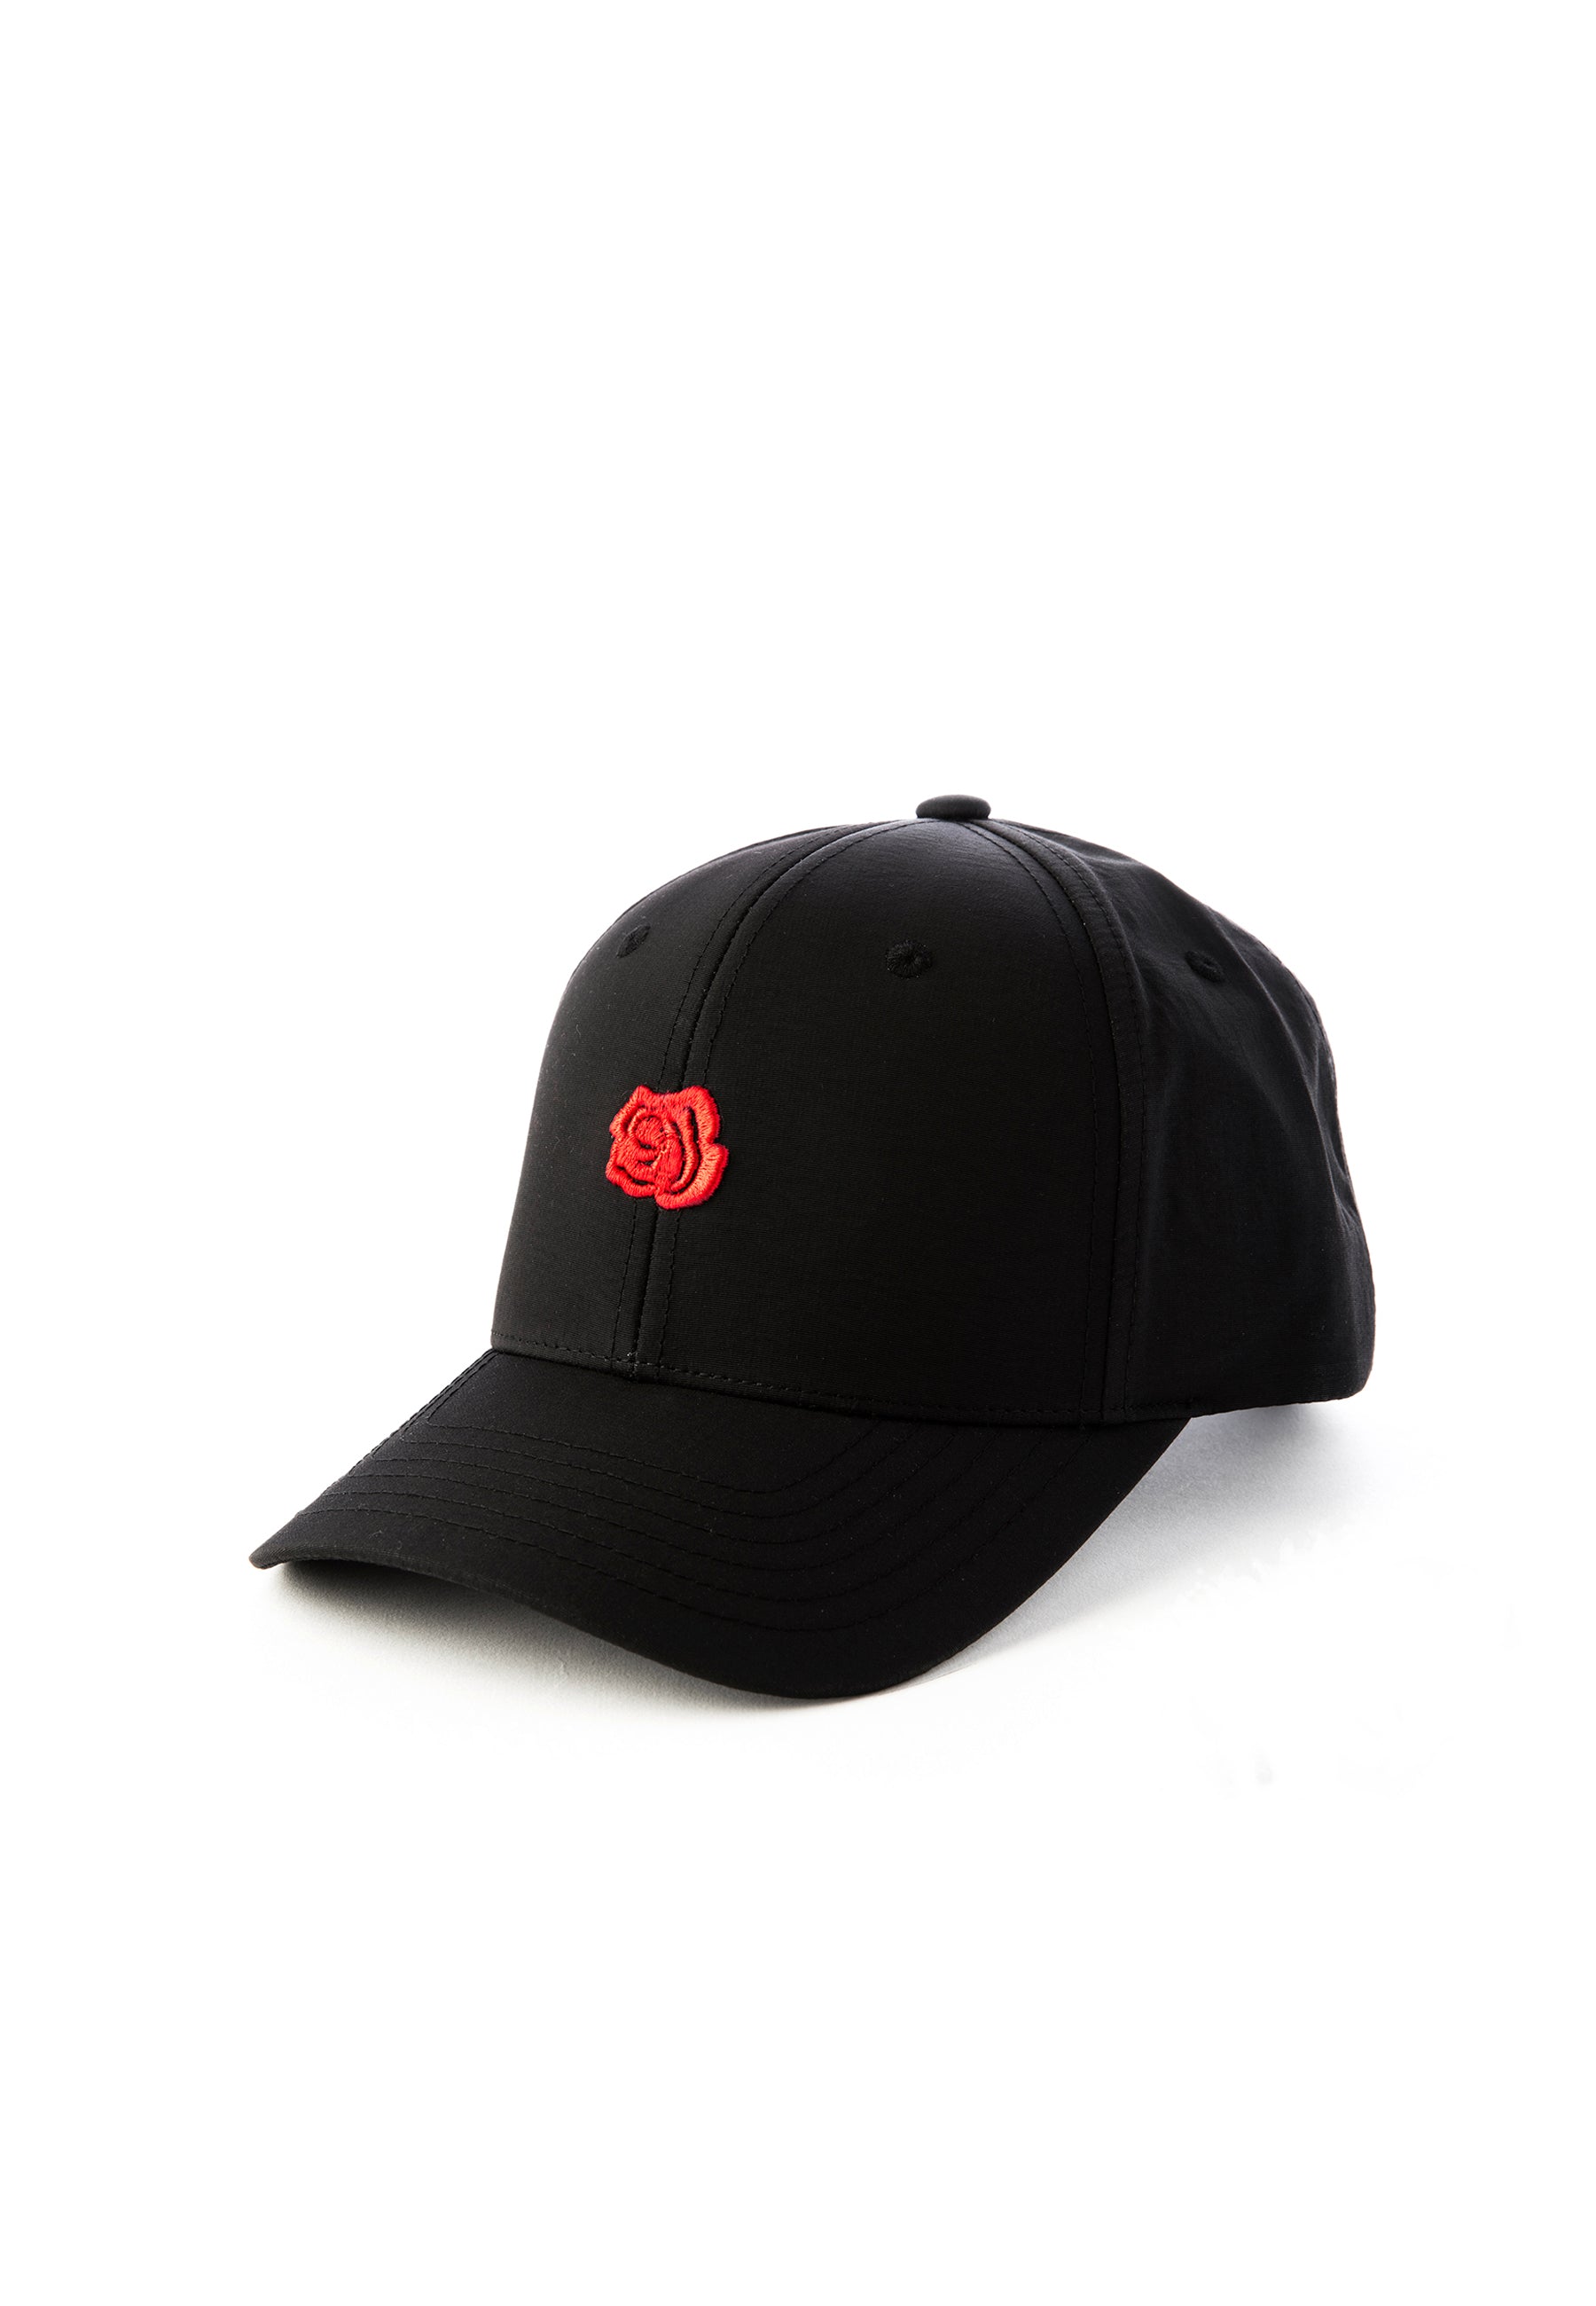 ROSE CAP - BLACK RED